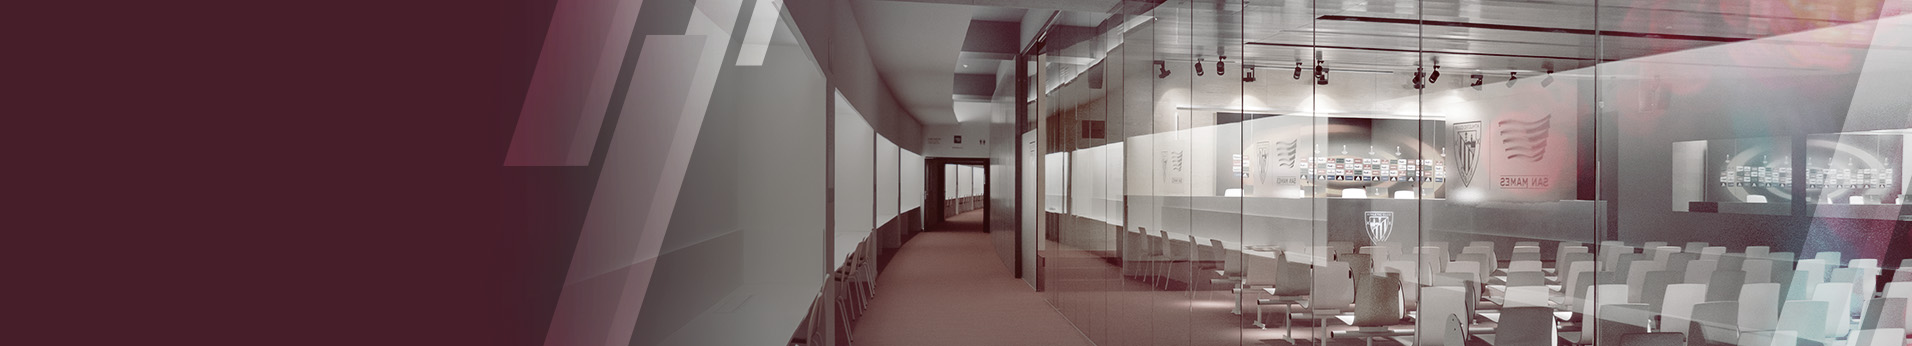 interior of the press area